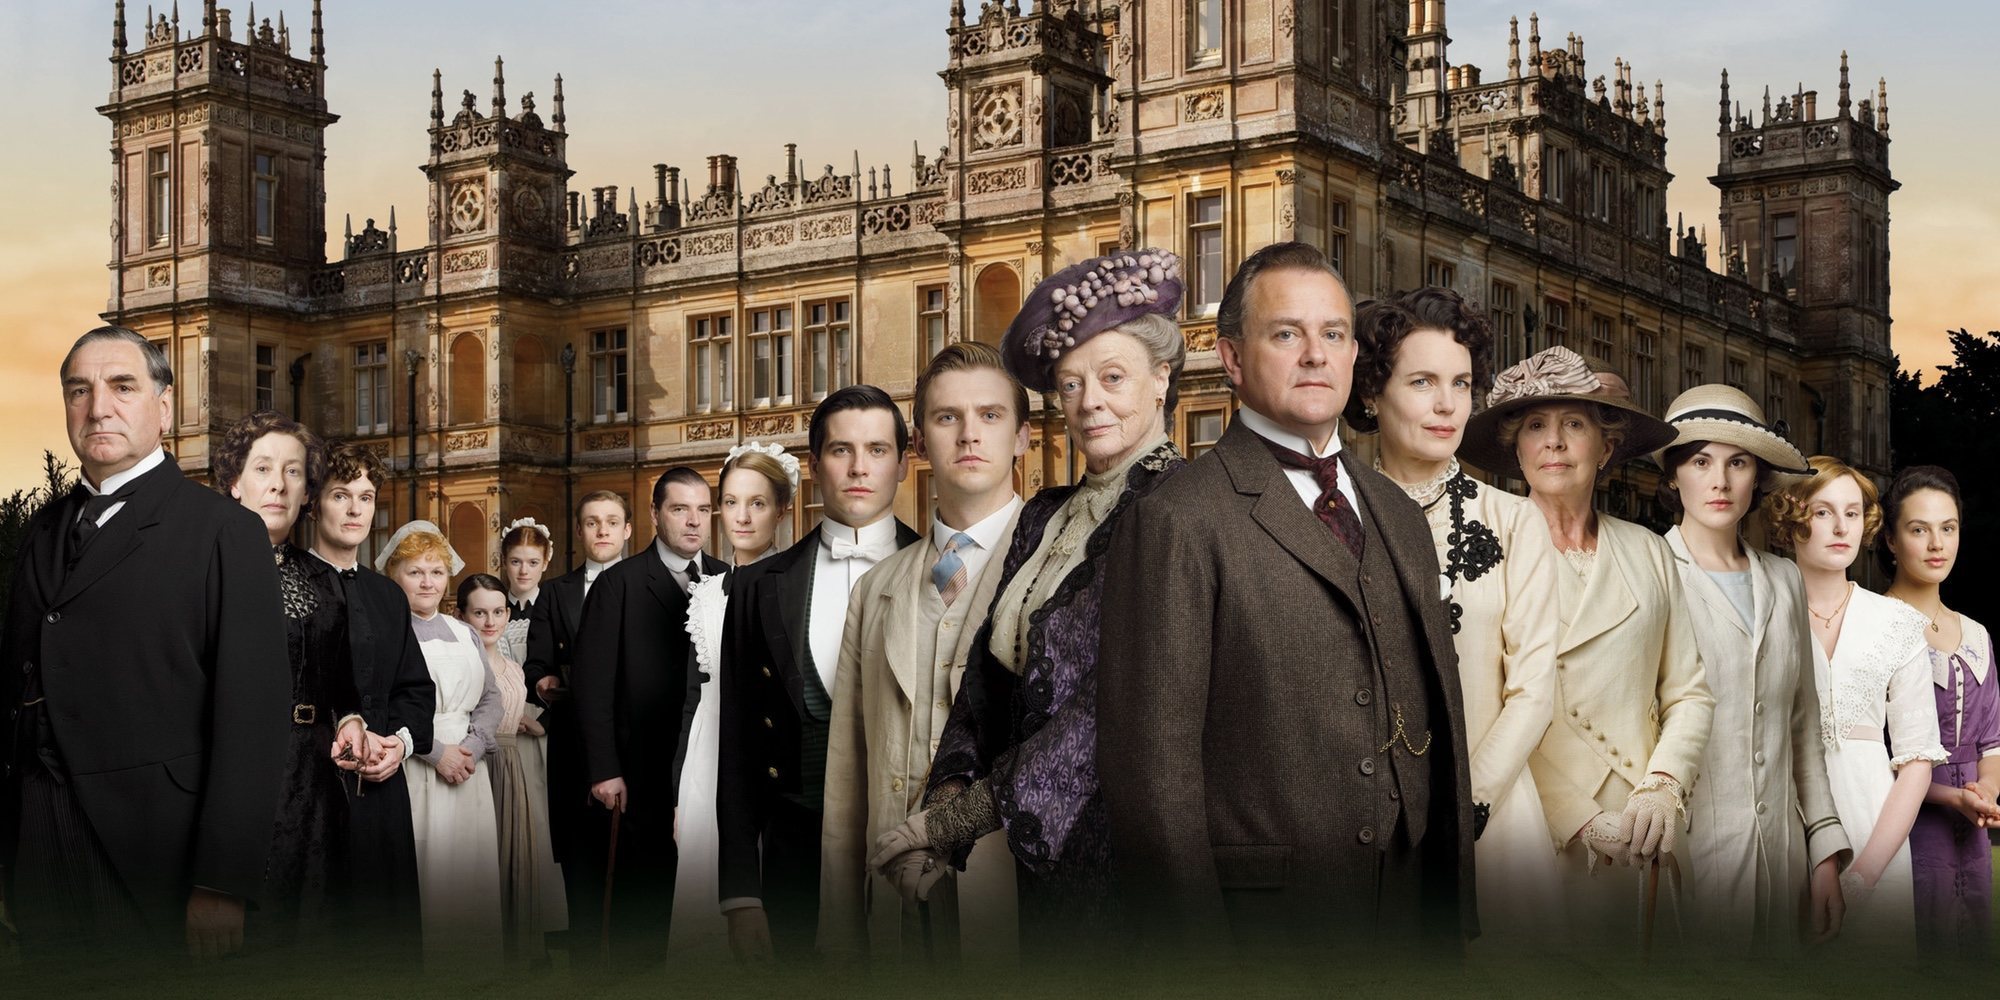 Los protagonistas de 'Downton Abbey' protagonizan un bonito reencuentro en Los Ángeles